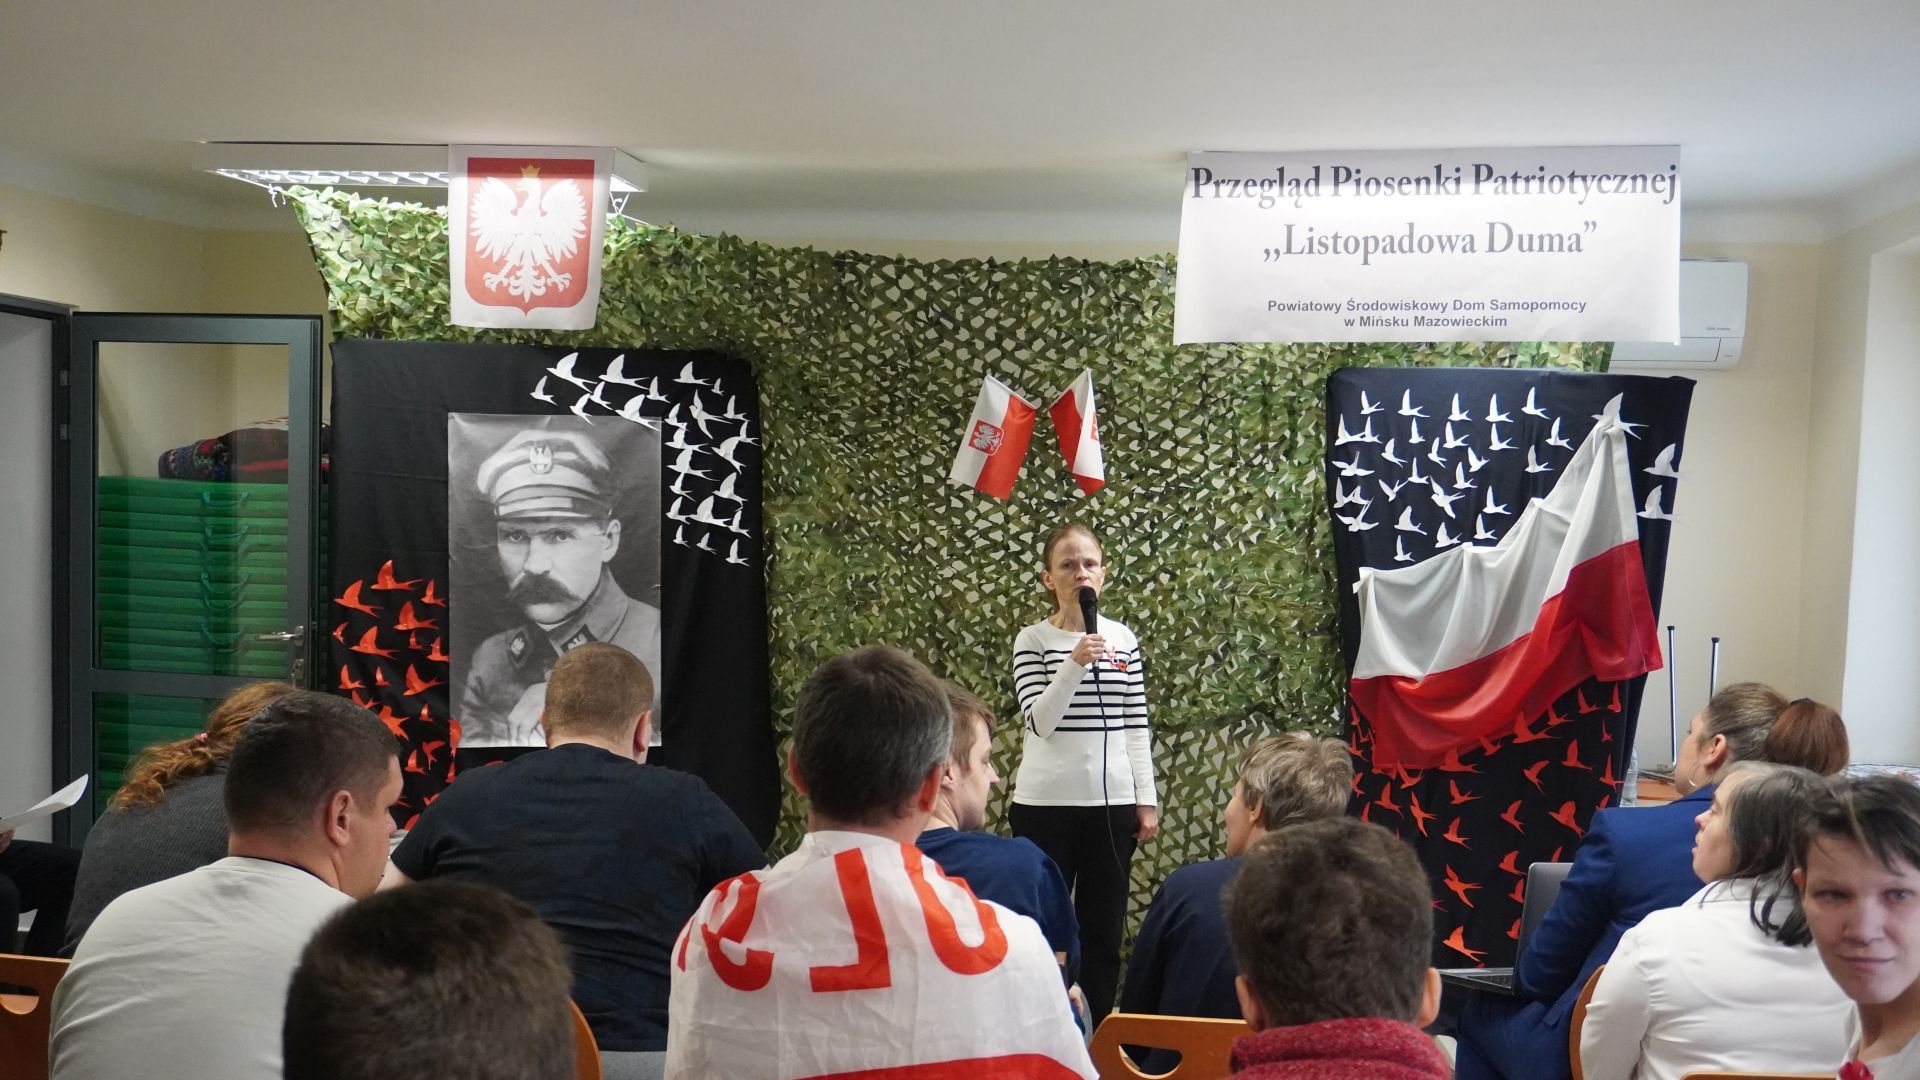 Uczestniczka występuje podczas Przeglądu Piosenki Patriotycznej ''Listopadowa Duma''.